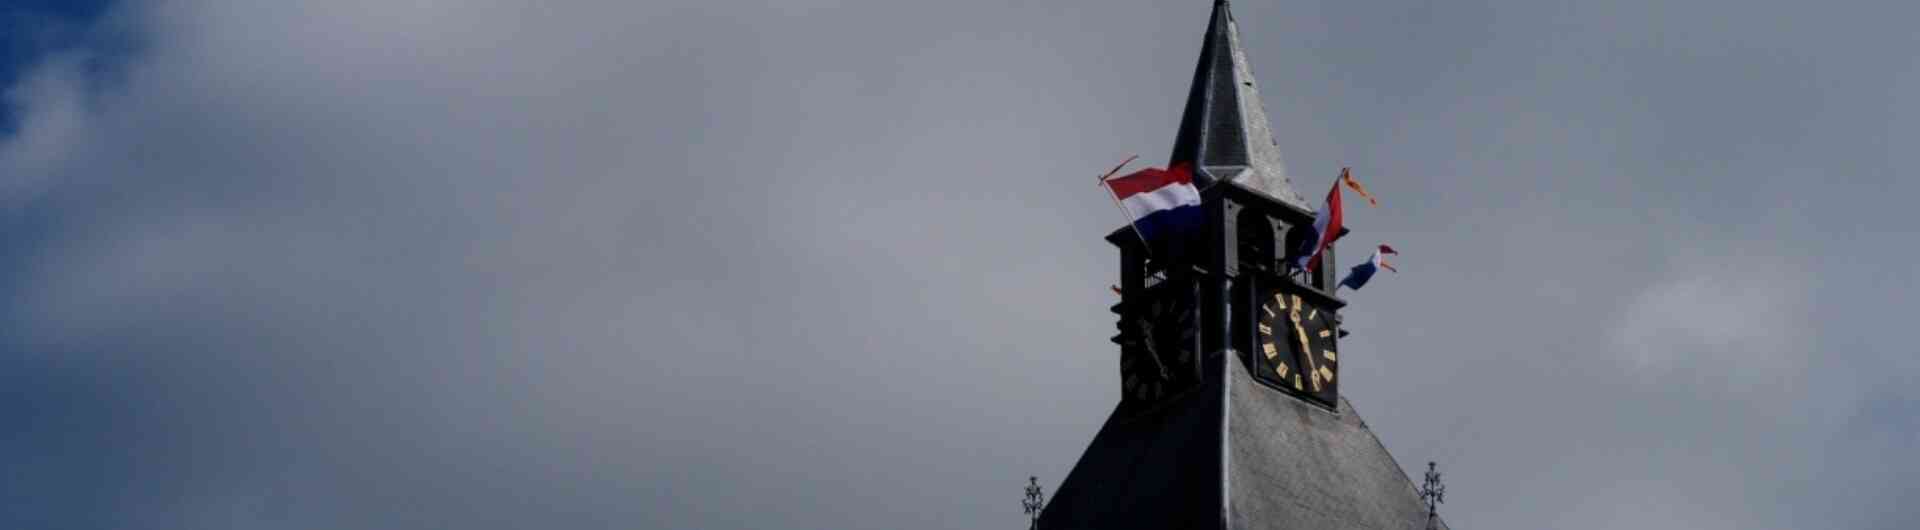 Koningsdag Oldenzaal